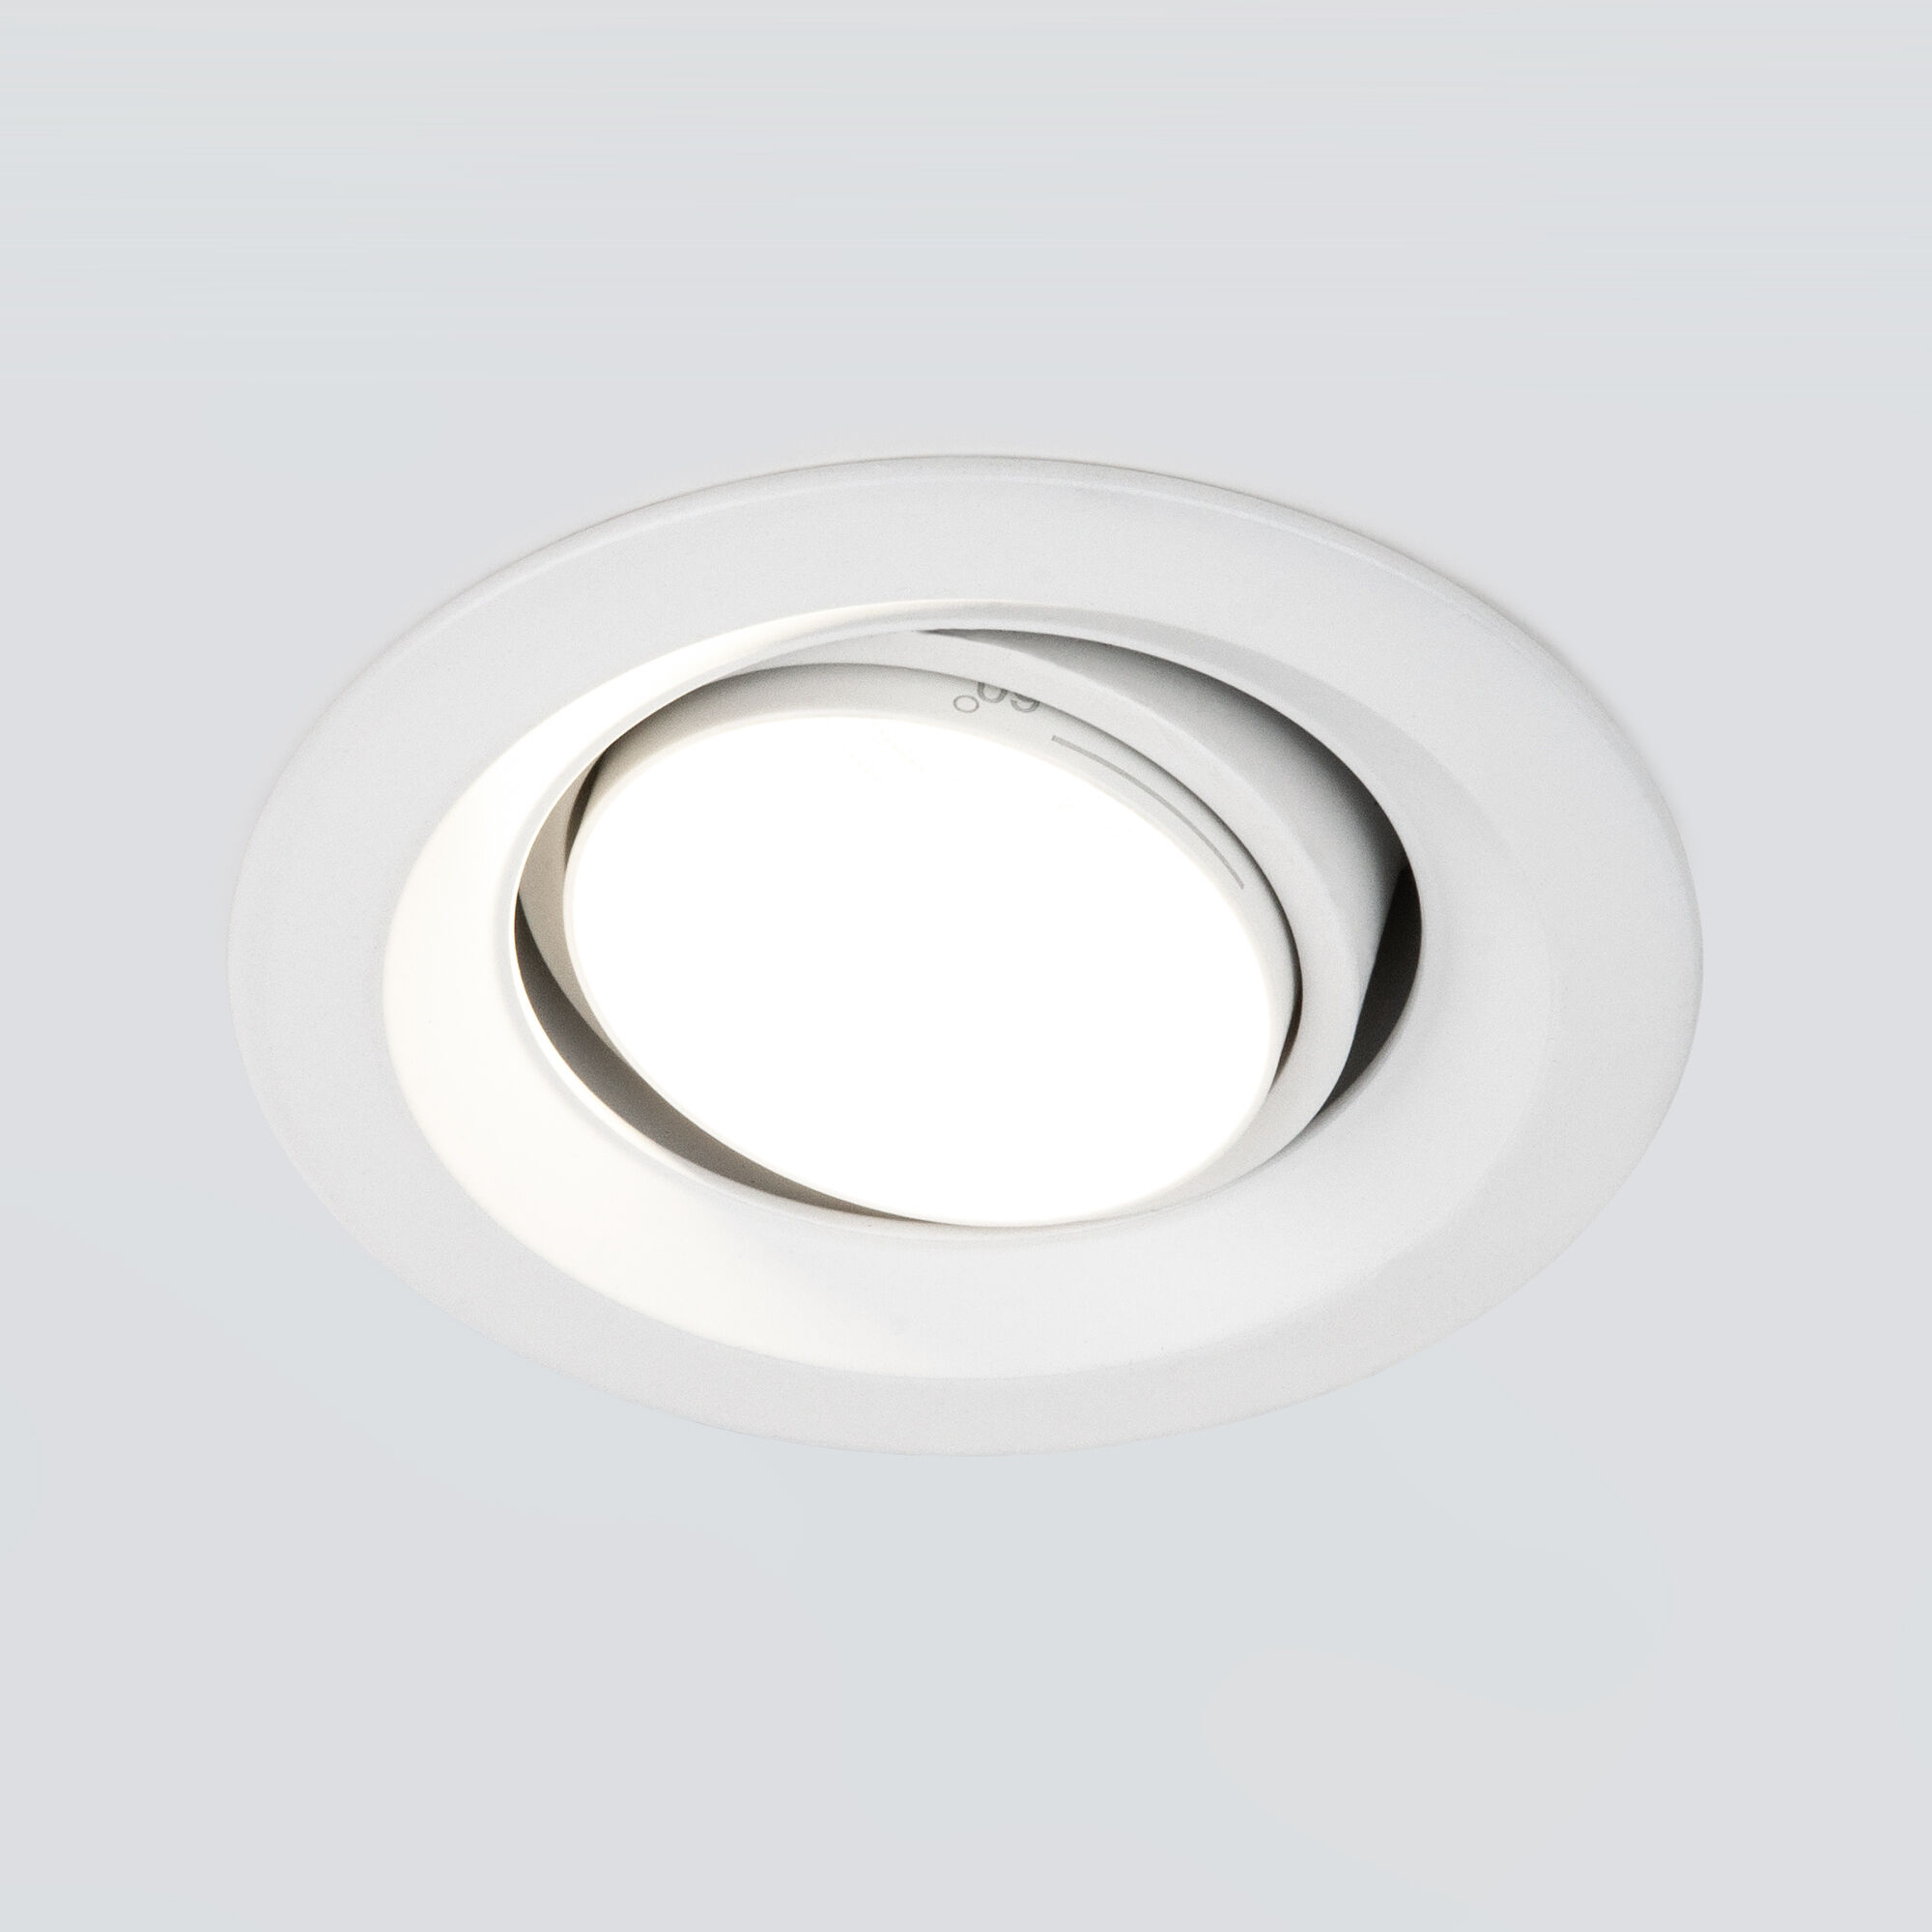 Встраиваемый светодиодный светильник с регулировкой угла освещения Zoom 10W 3000K белый 9919 LED